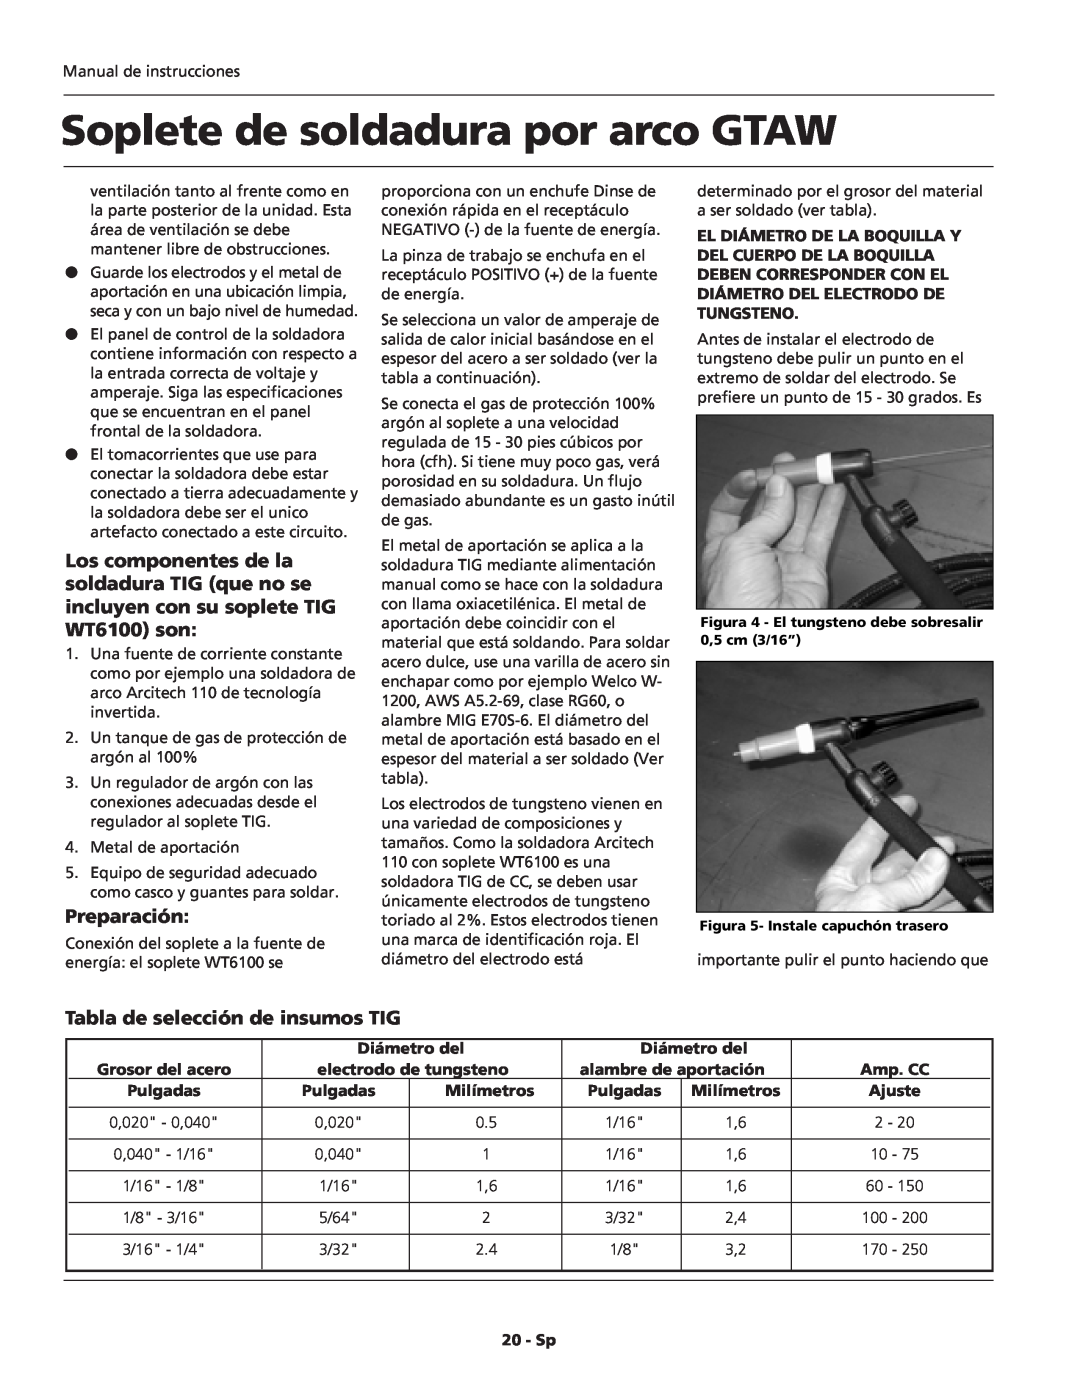 Campbell Hausfeld WT6100 Preparación, Tabla de selección de insumos TIG, Diámetro del, Grosor del acero, Amp. CC, Pulgadas 